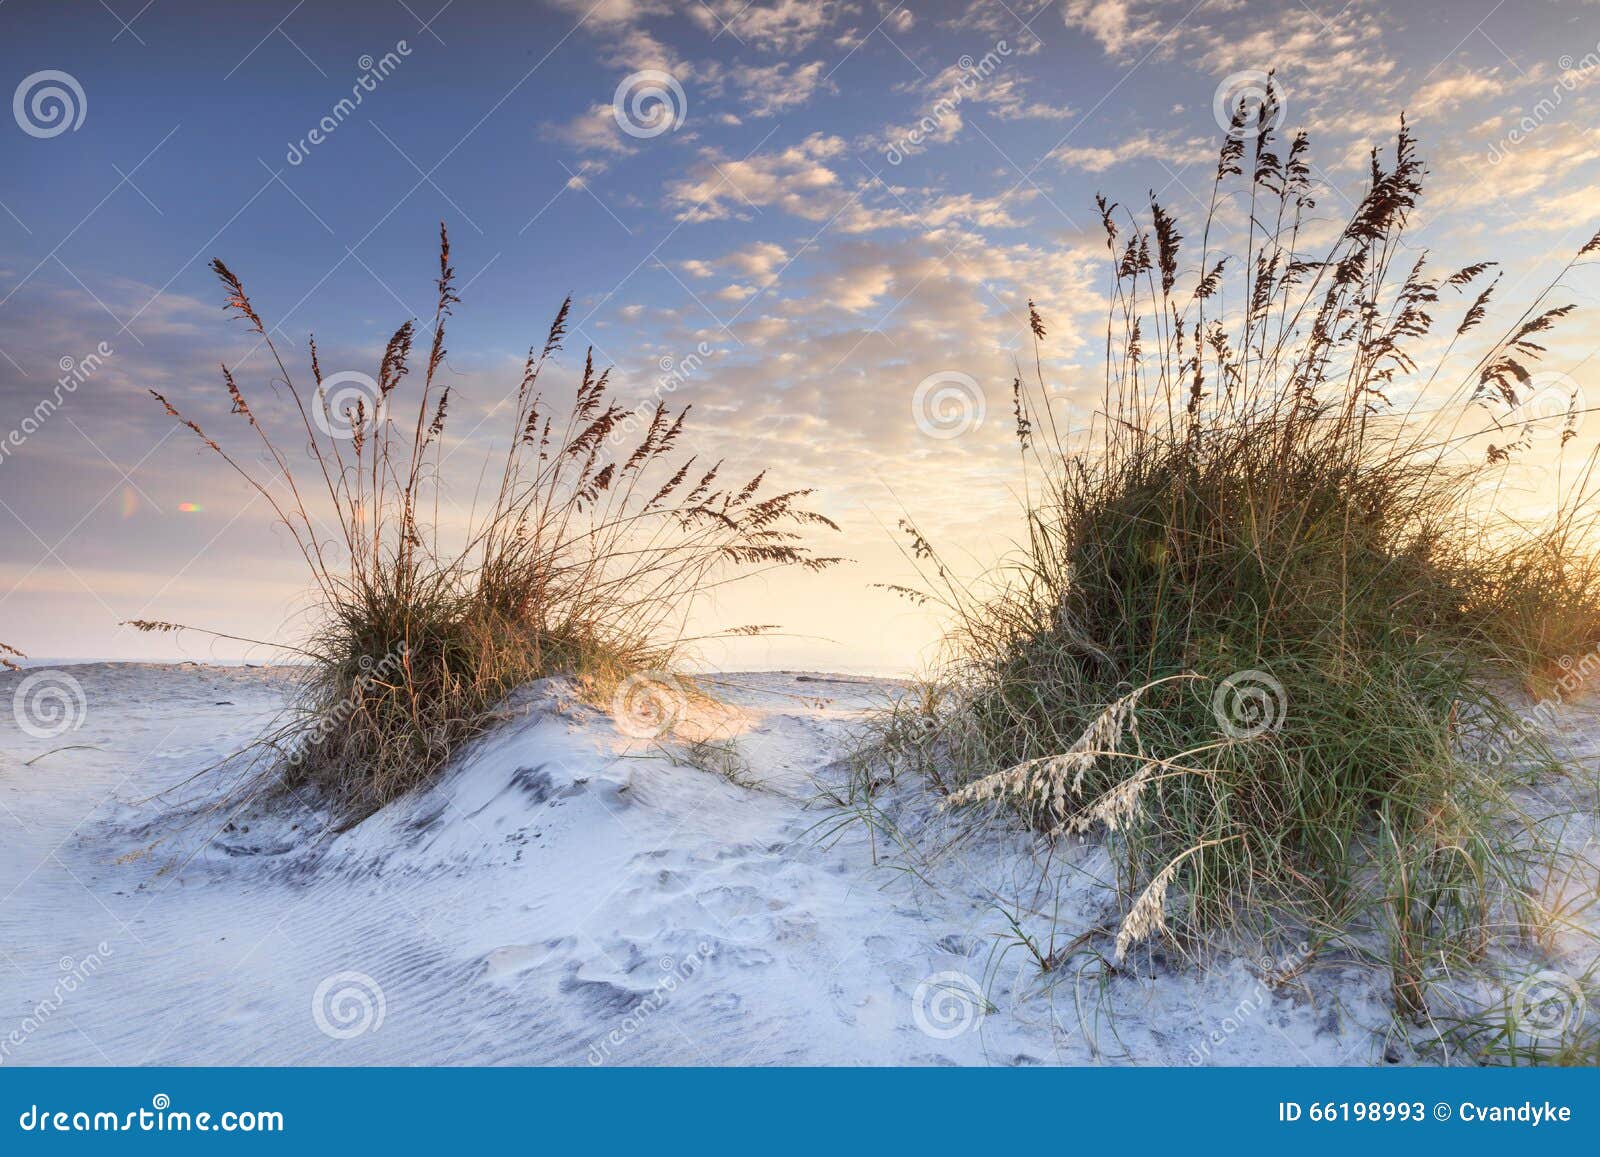 coastal sand and sea oats north carolina sunrise